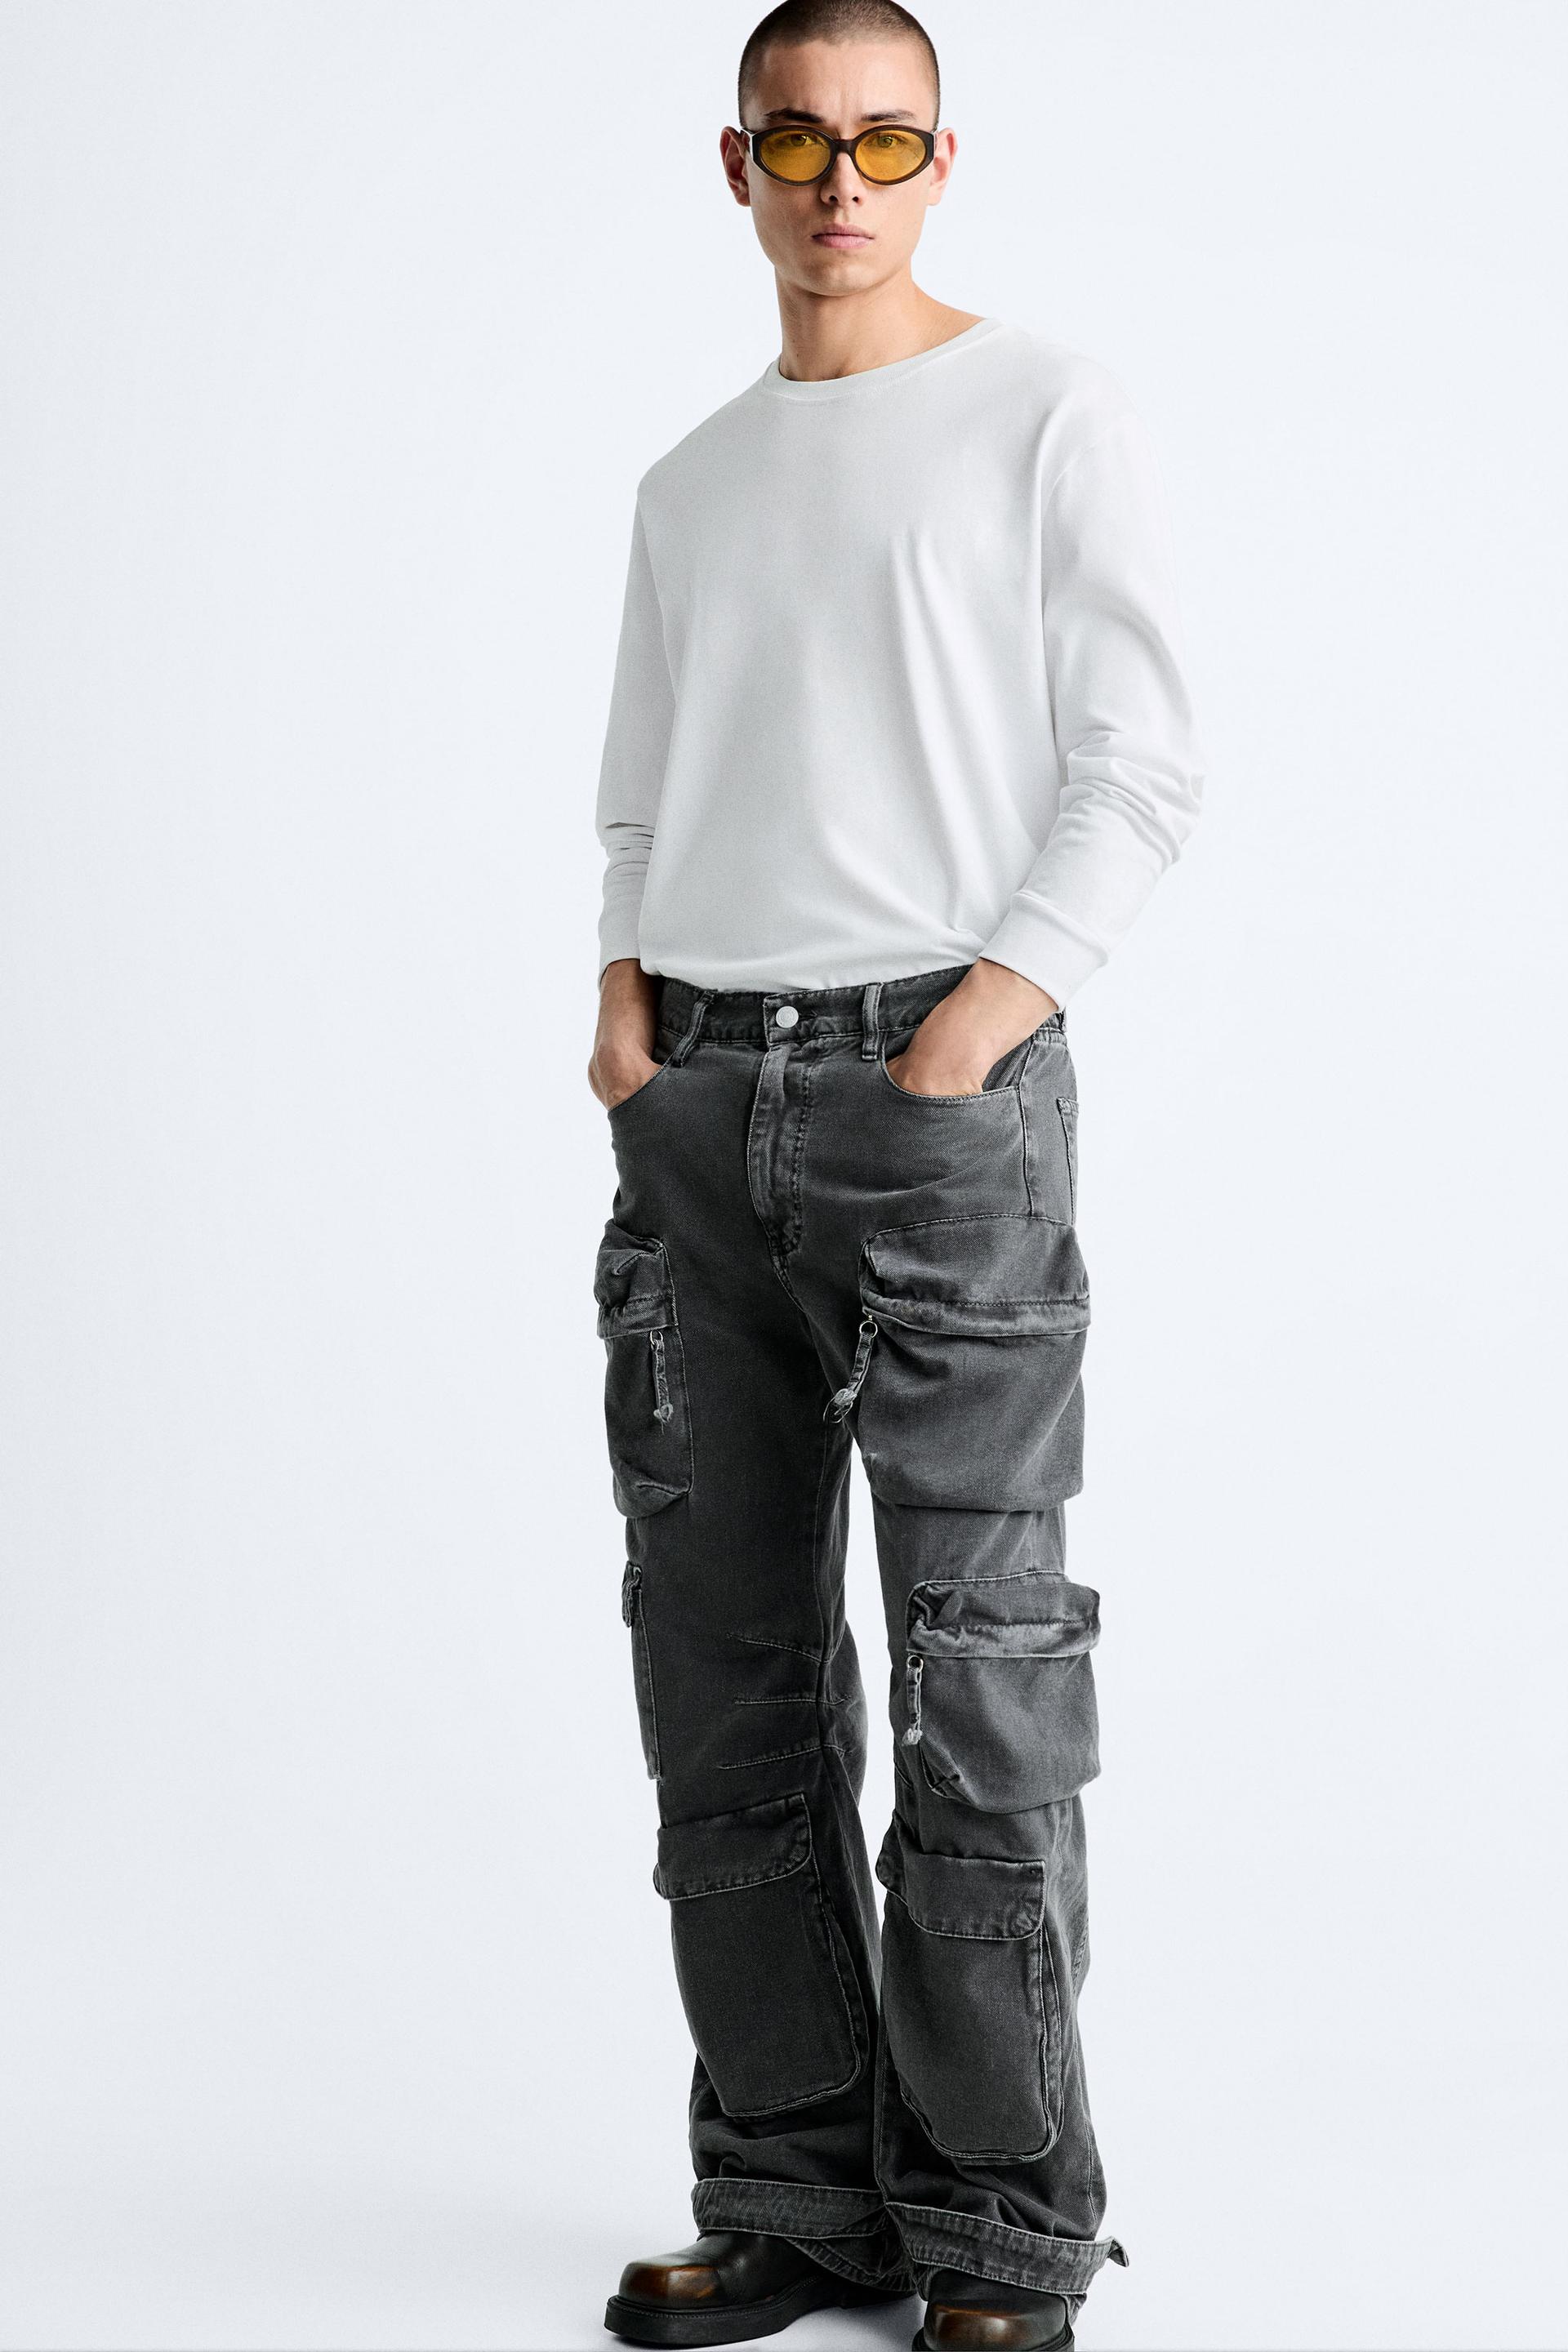 Zara, Jeans, Zara Mens Utility Pocket Jeans Waist 32